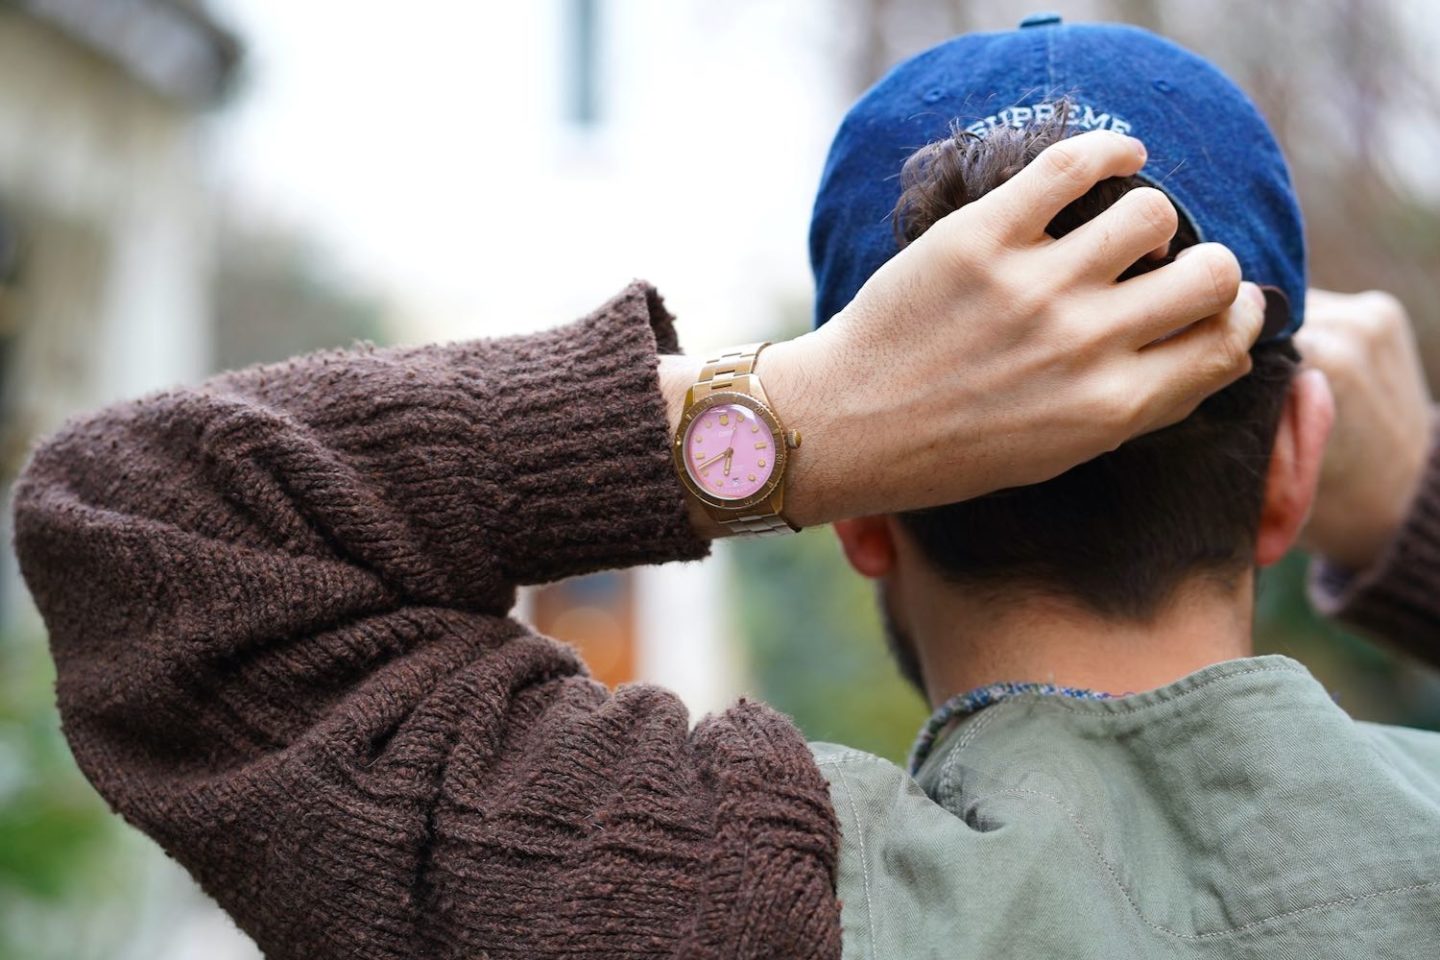 édito photo où boras présente un look avec la montre Oris en bronze cotton candy à cadran rose